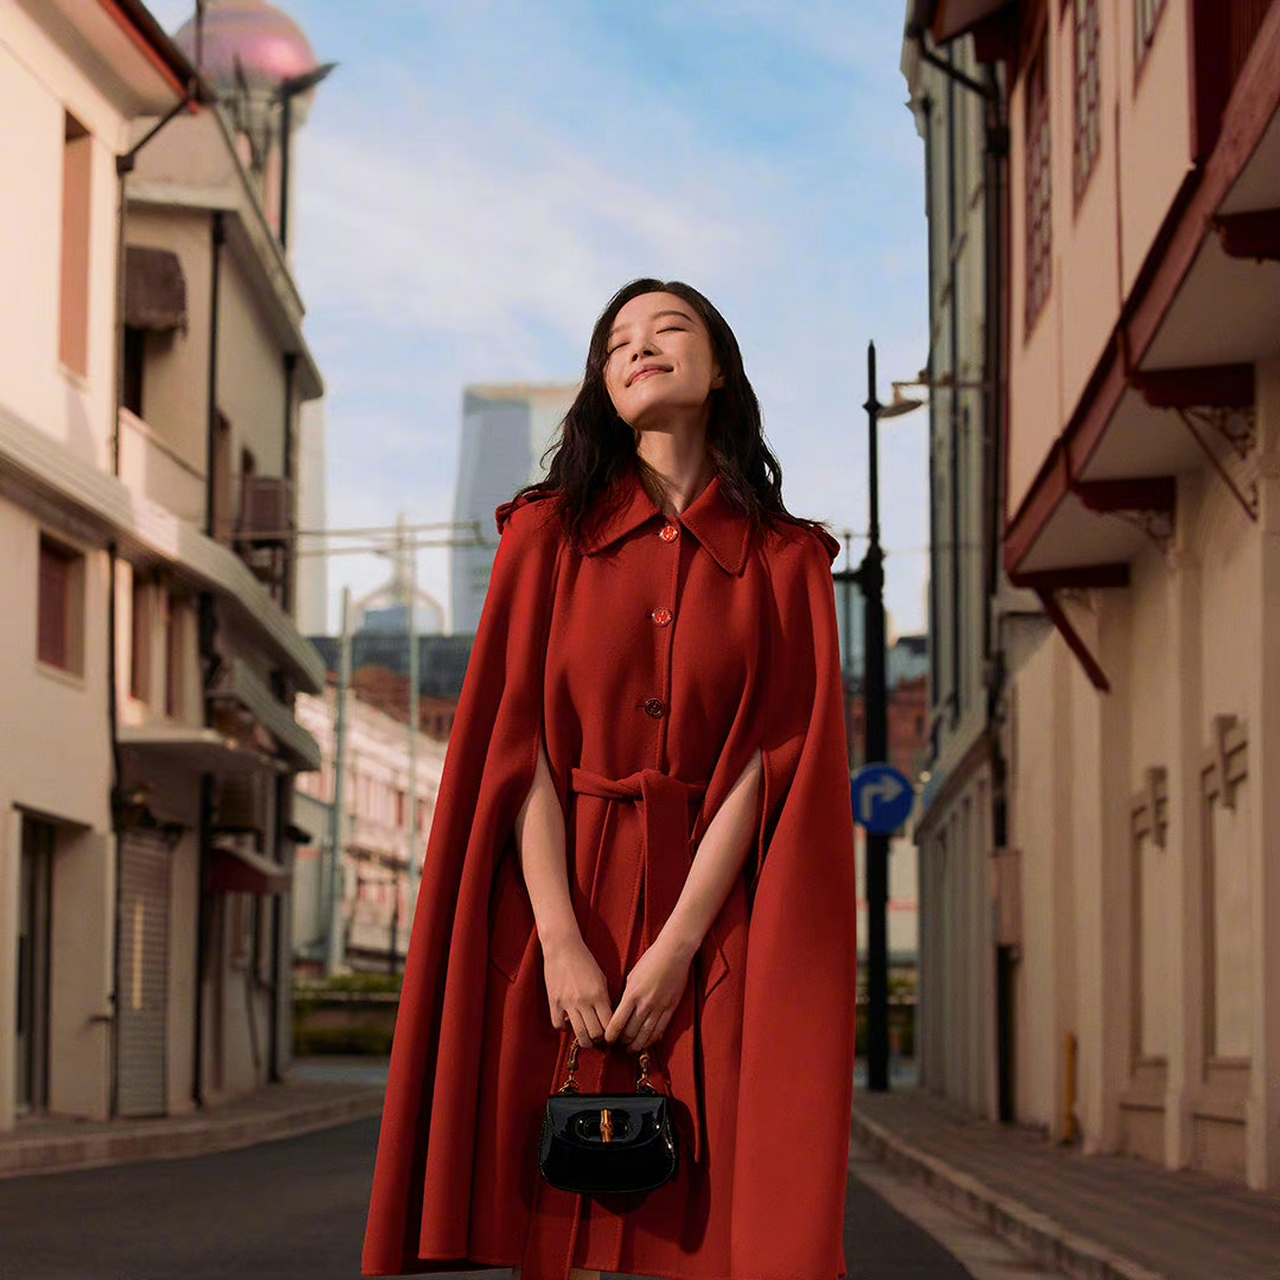 倪妮寰宇古驰典藏展宣传大片,午后暖阳街头,一身红衣造型,明亮又漂亮